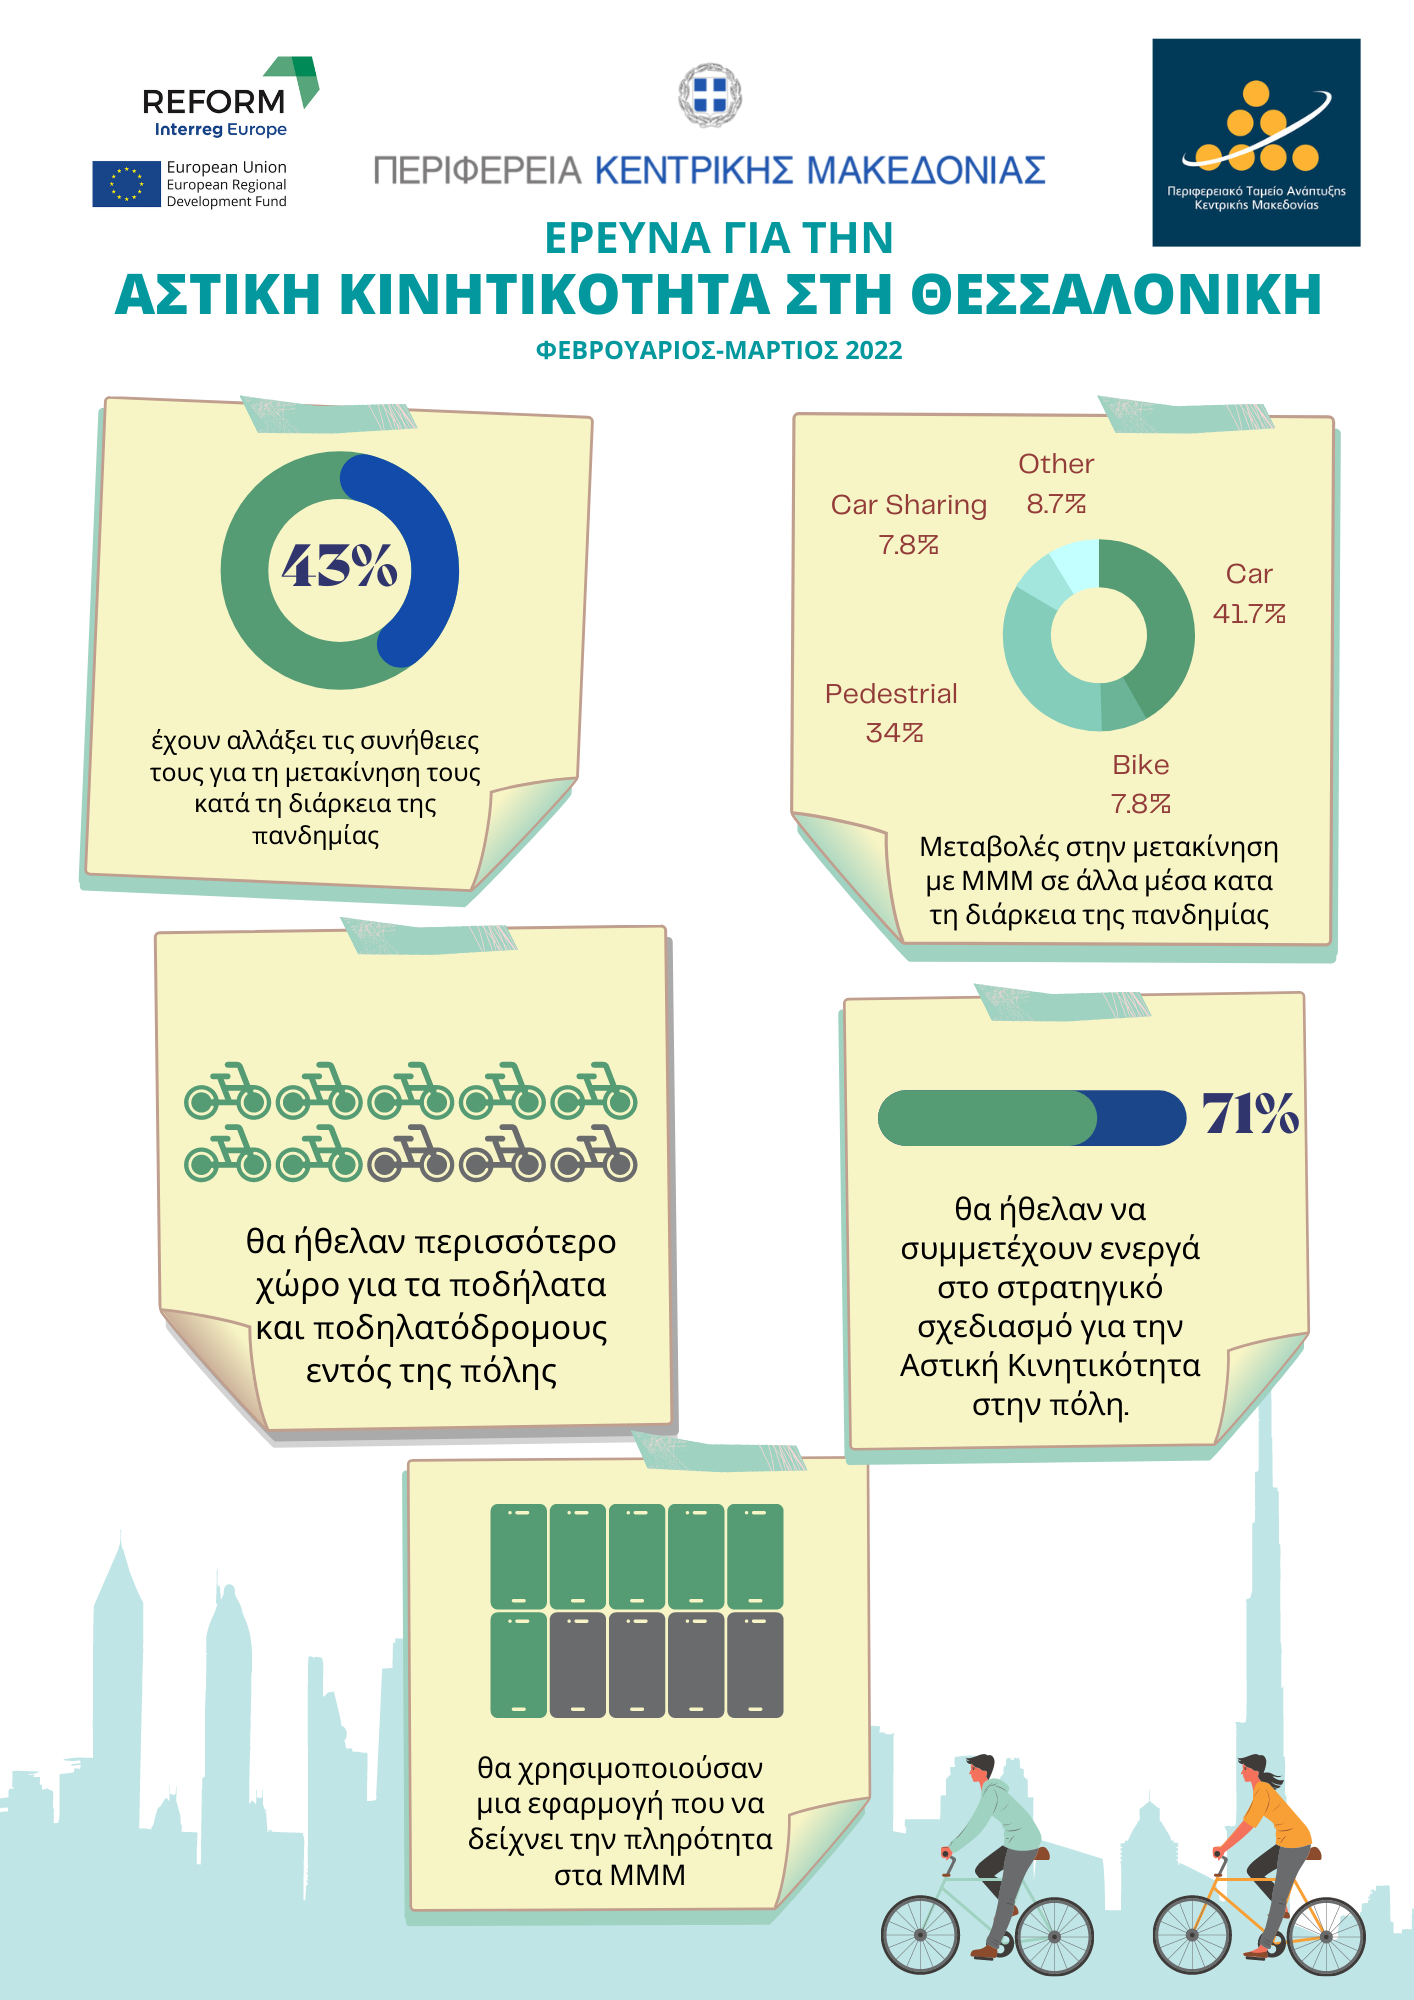 220503_reform_apotelesmata_ereynas_gia_tin_astiki_kinitikotita_infographic.png